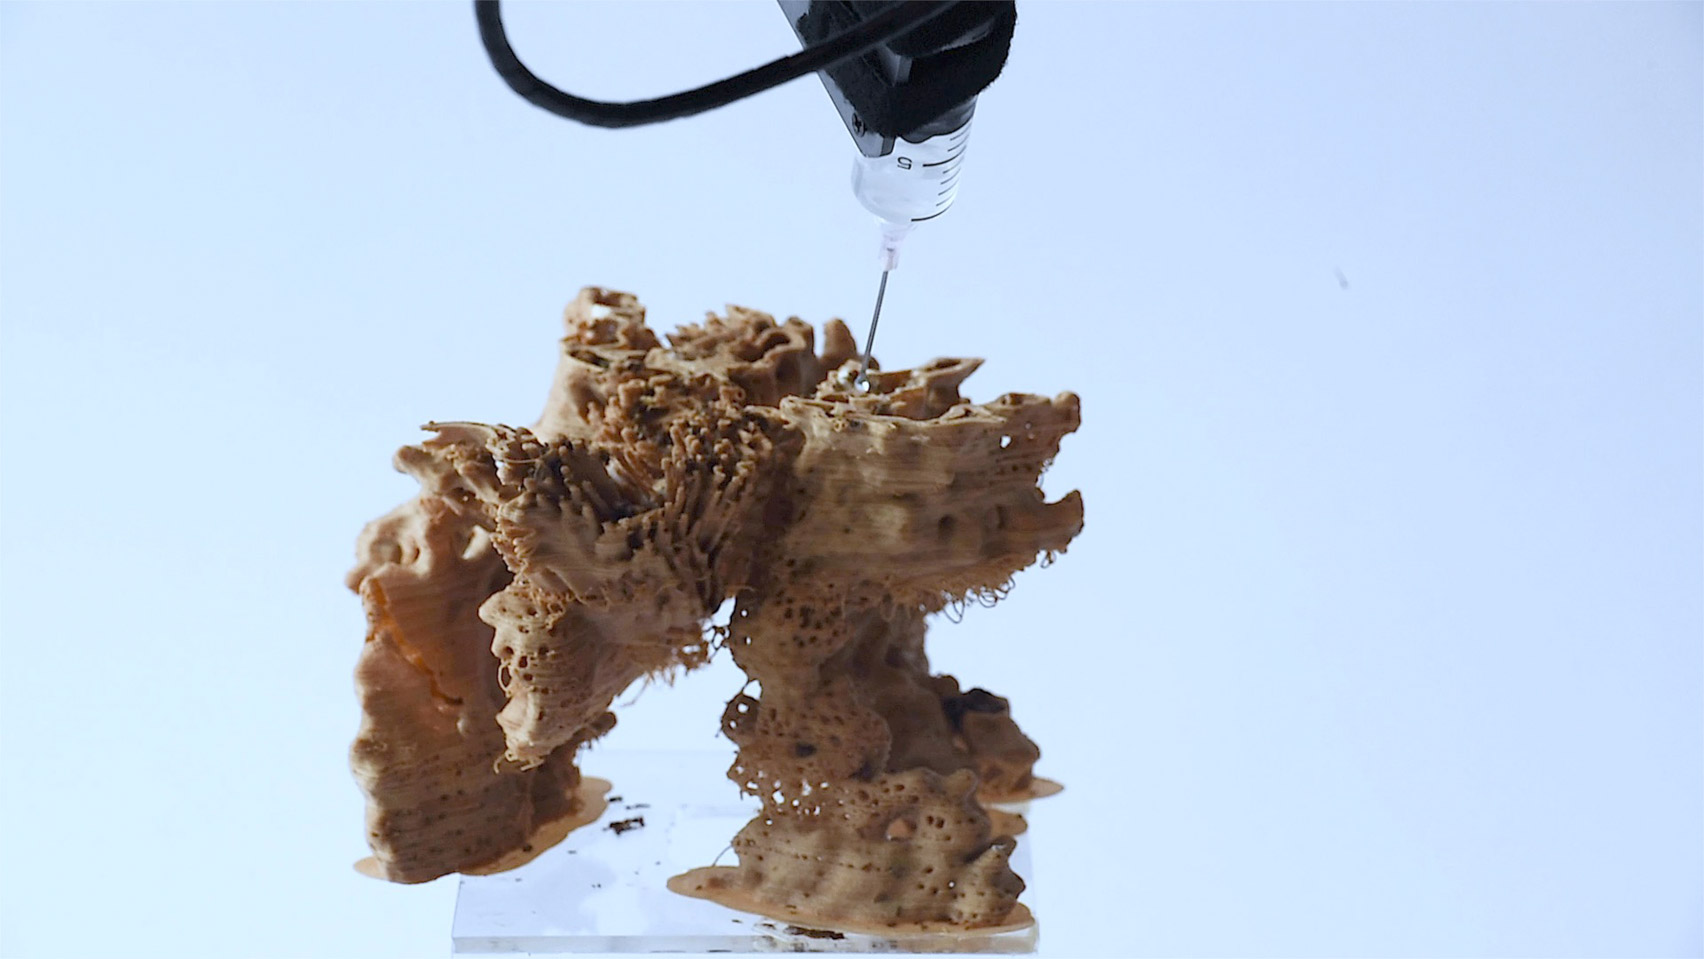 Robot arm moisturising mycelium on wooden sculpture